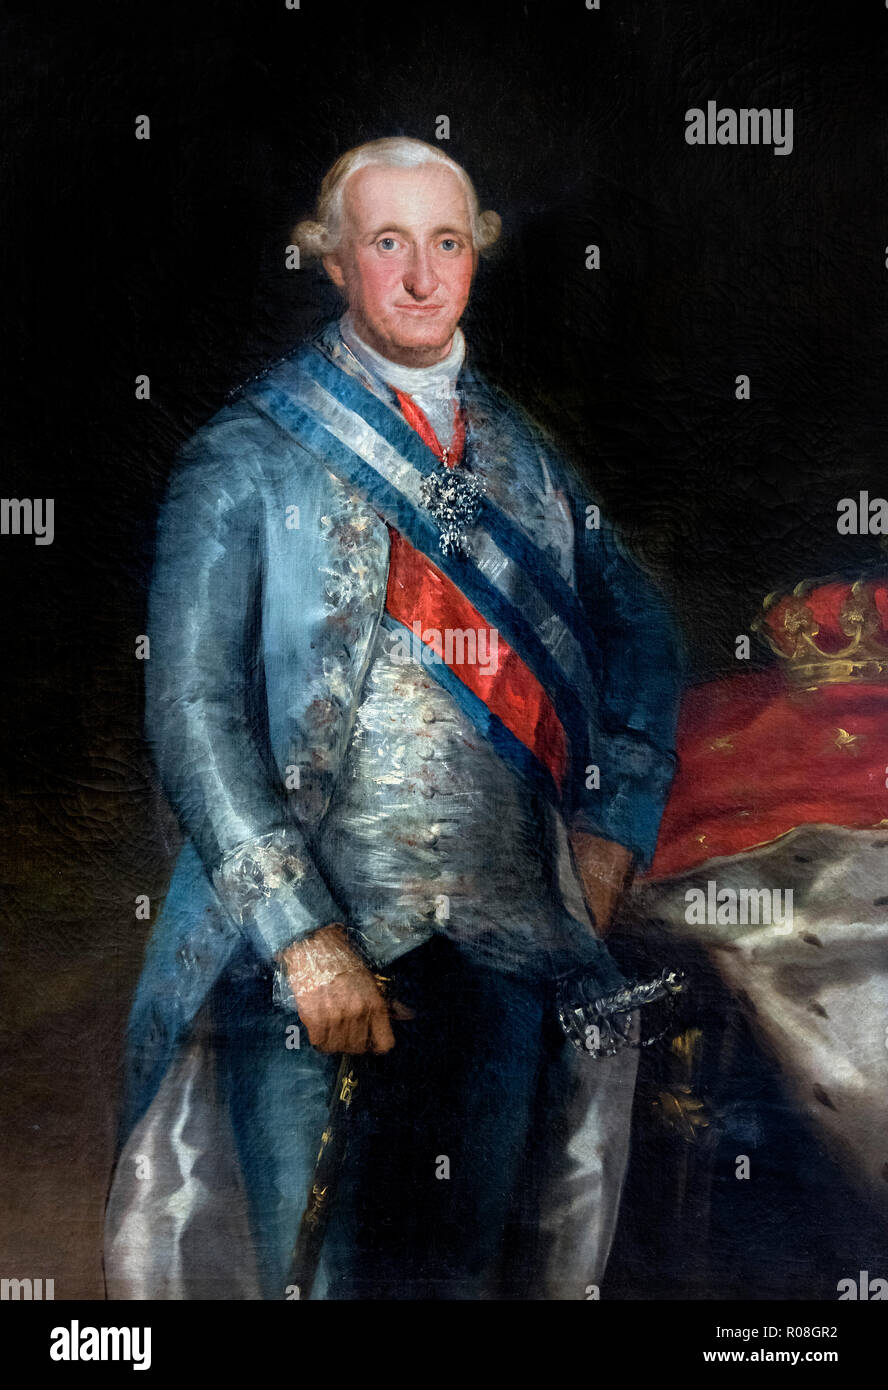 Carlos IV Portrait du roi Charles IV d'Espagne (1748-1819) par Francisco José de Goya y Lucientes (1746-1828), huile sur toile, 1789 Banque D'Images